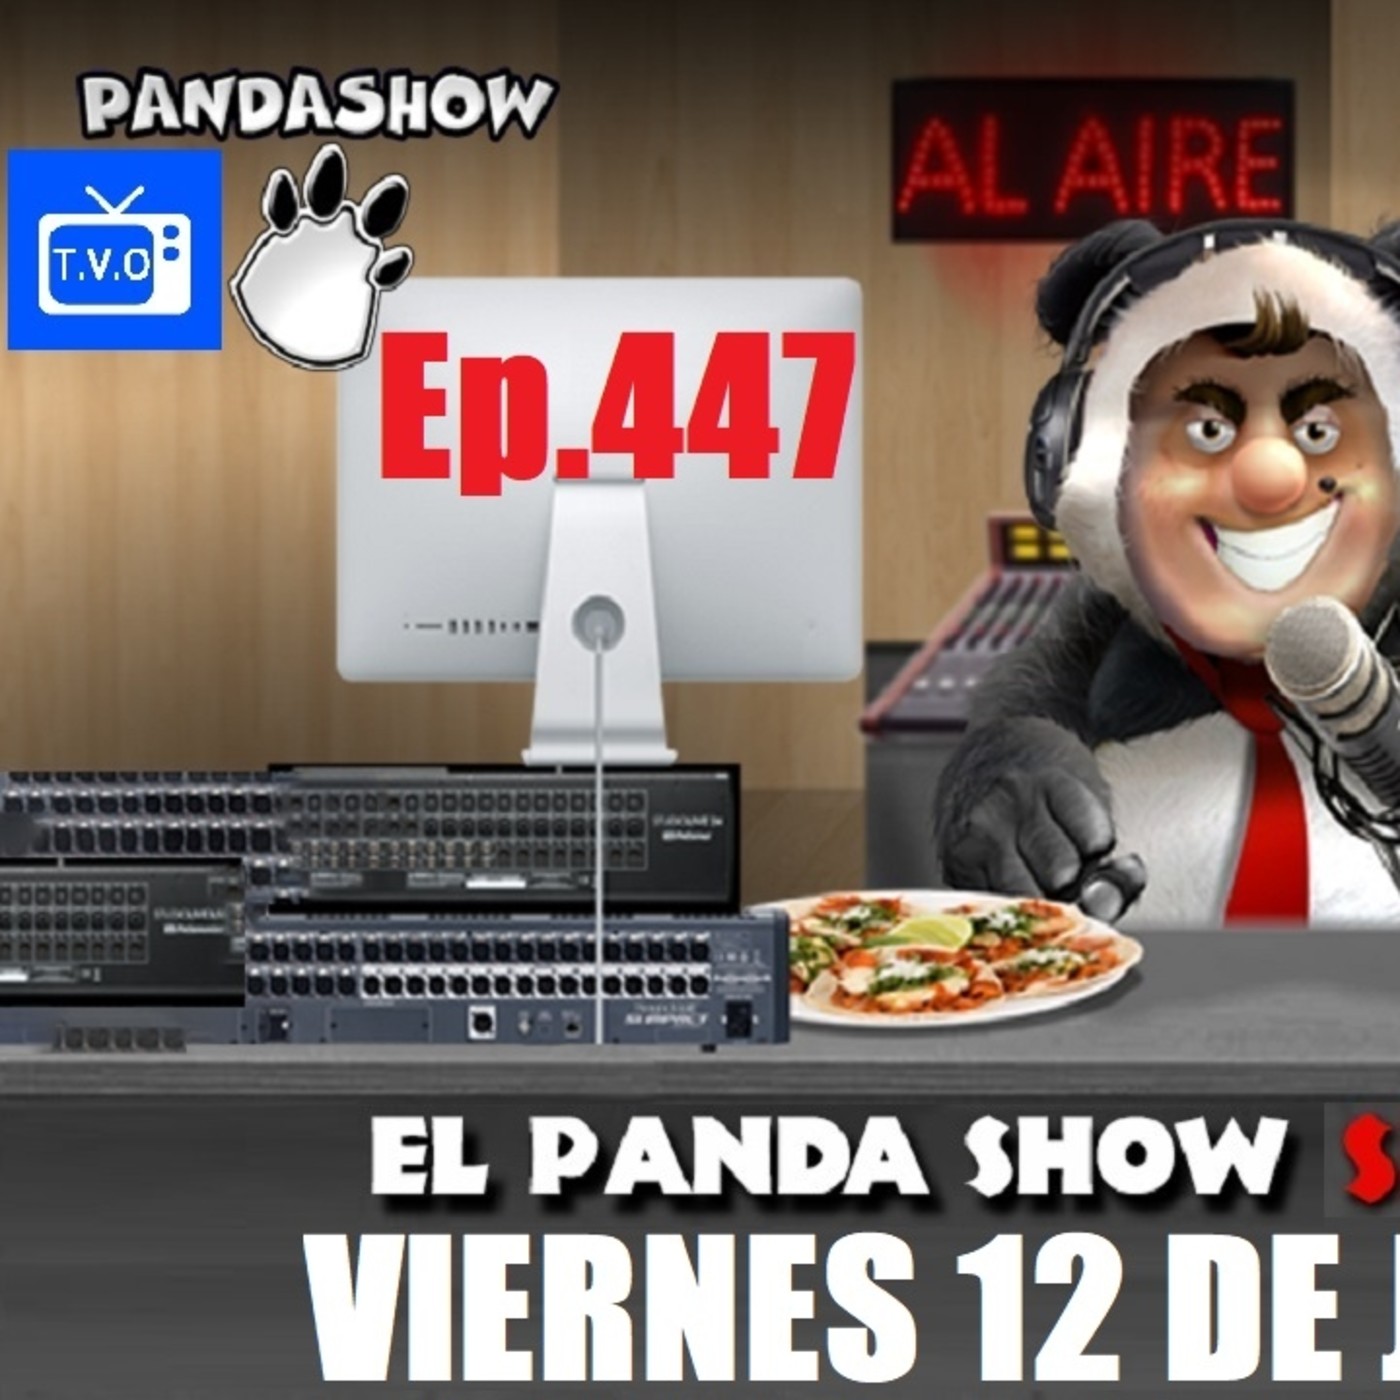 EL PANDA SHOW Ep. 447 VIERNES 12 DE JUNIO 2020